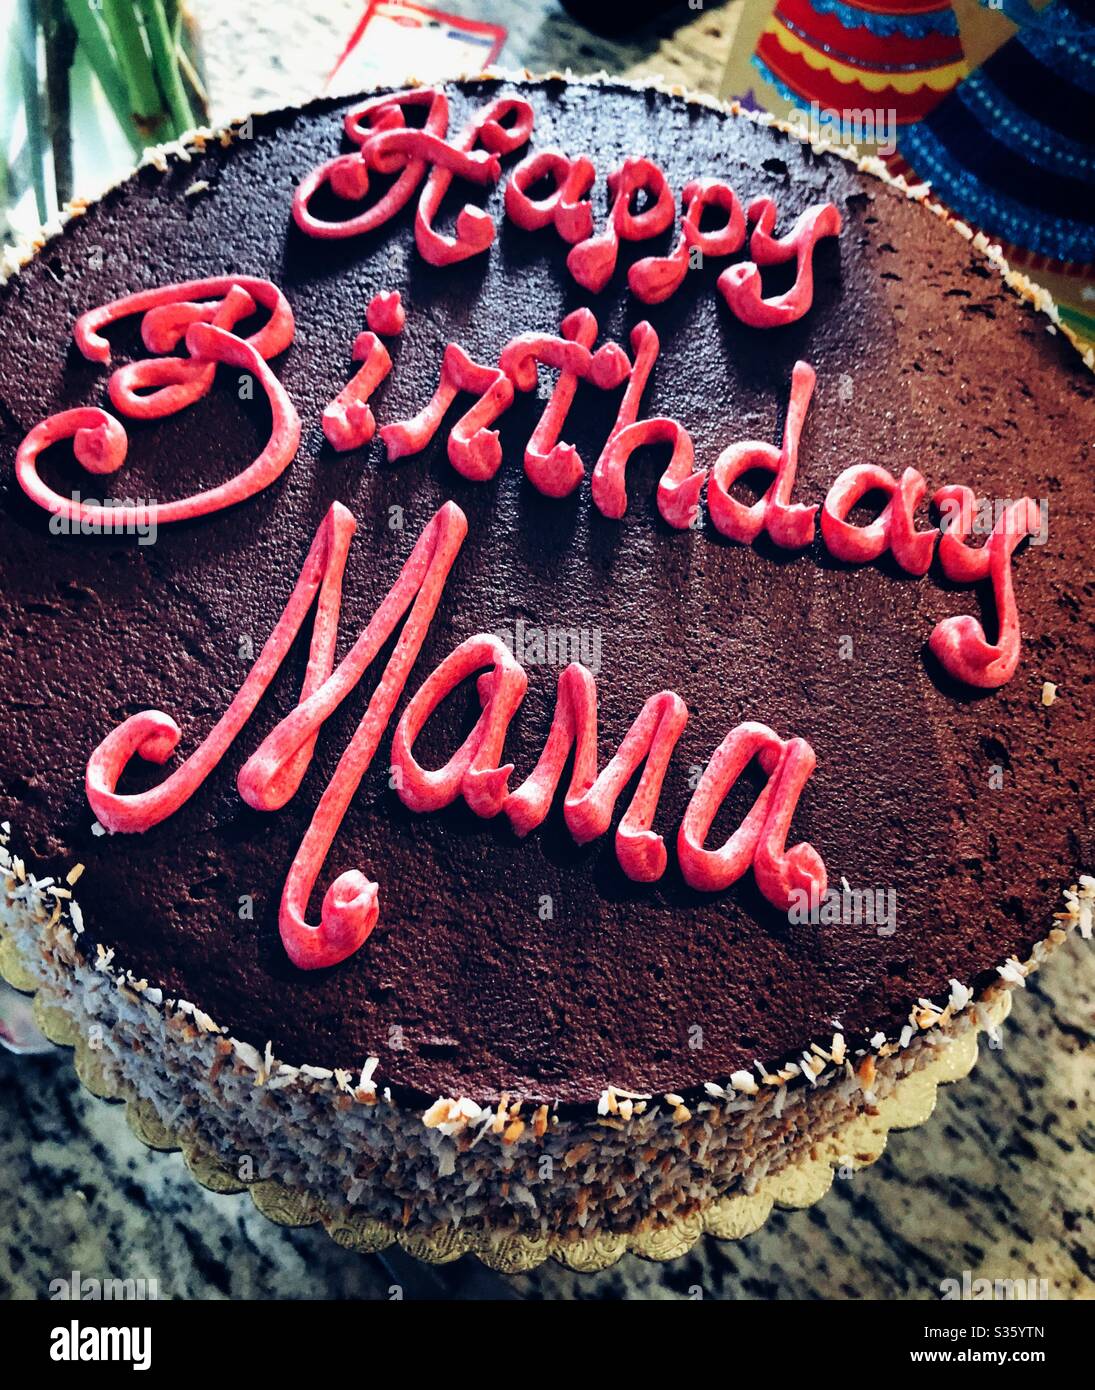 Happy Birthday Mama written on vegan chocolate cake Stock Photo